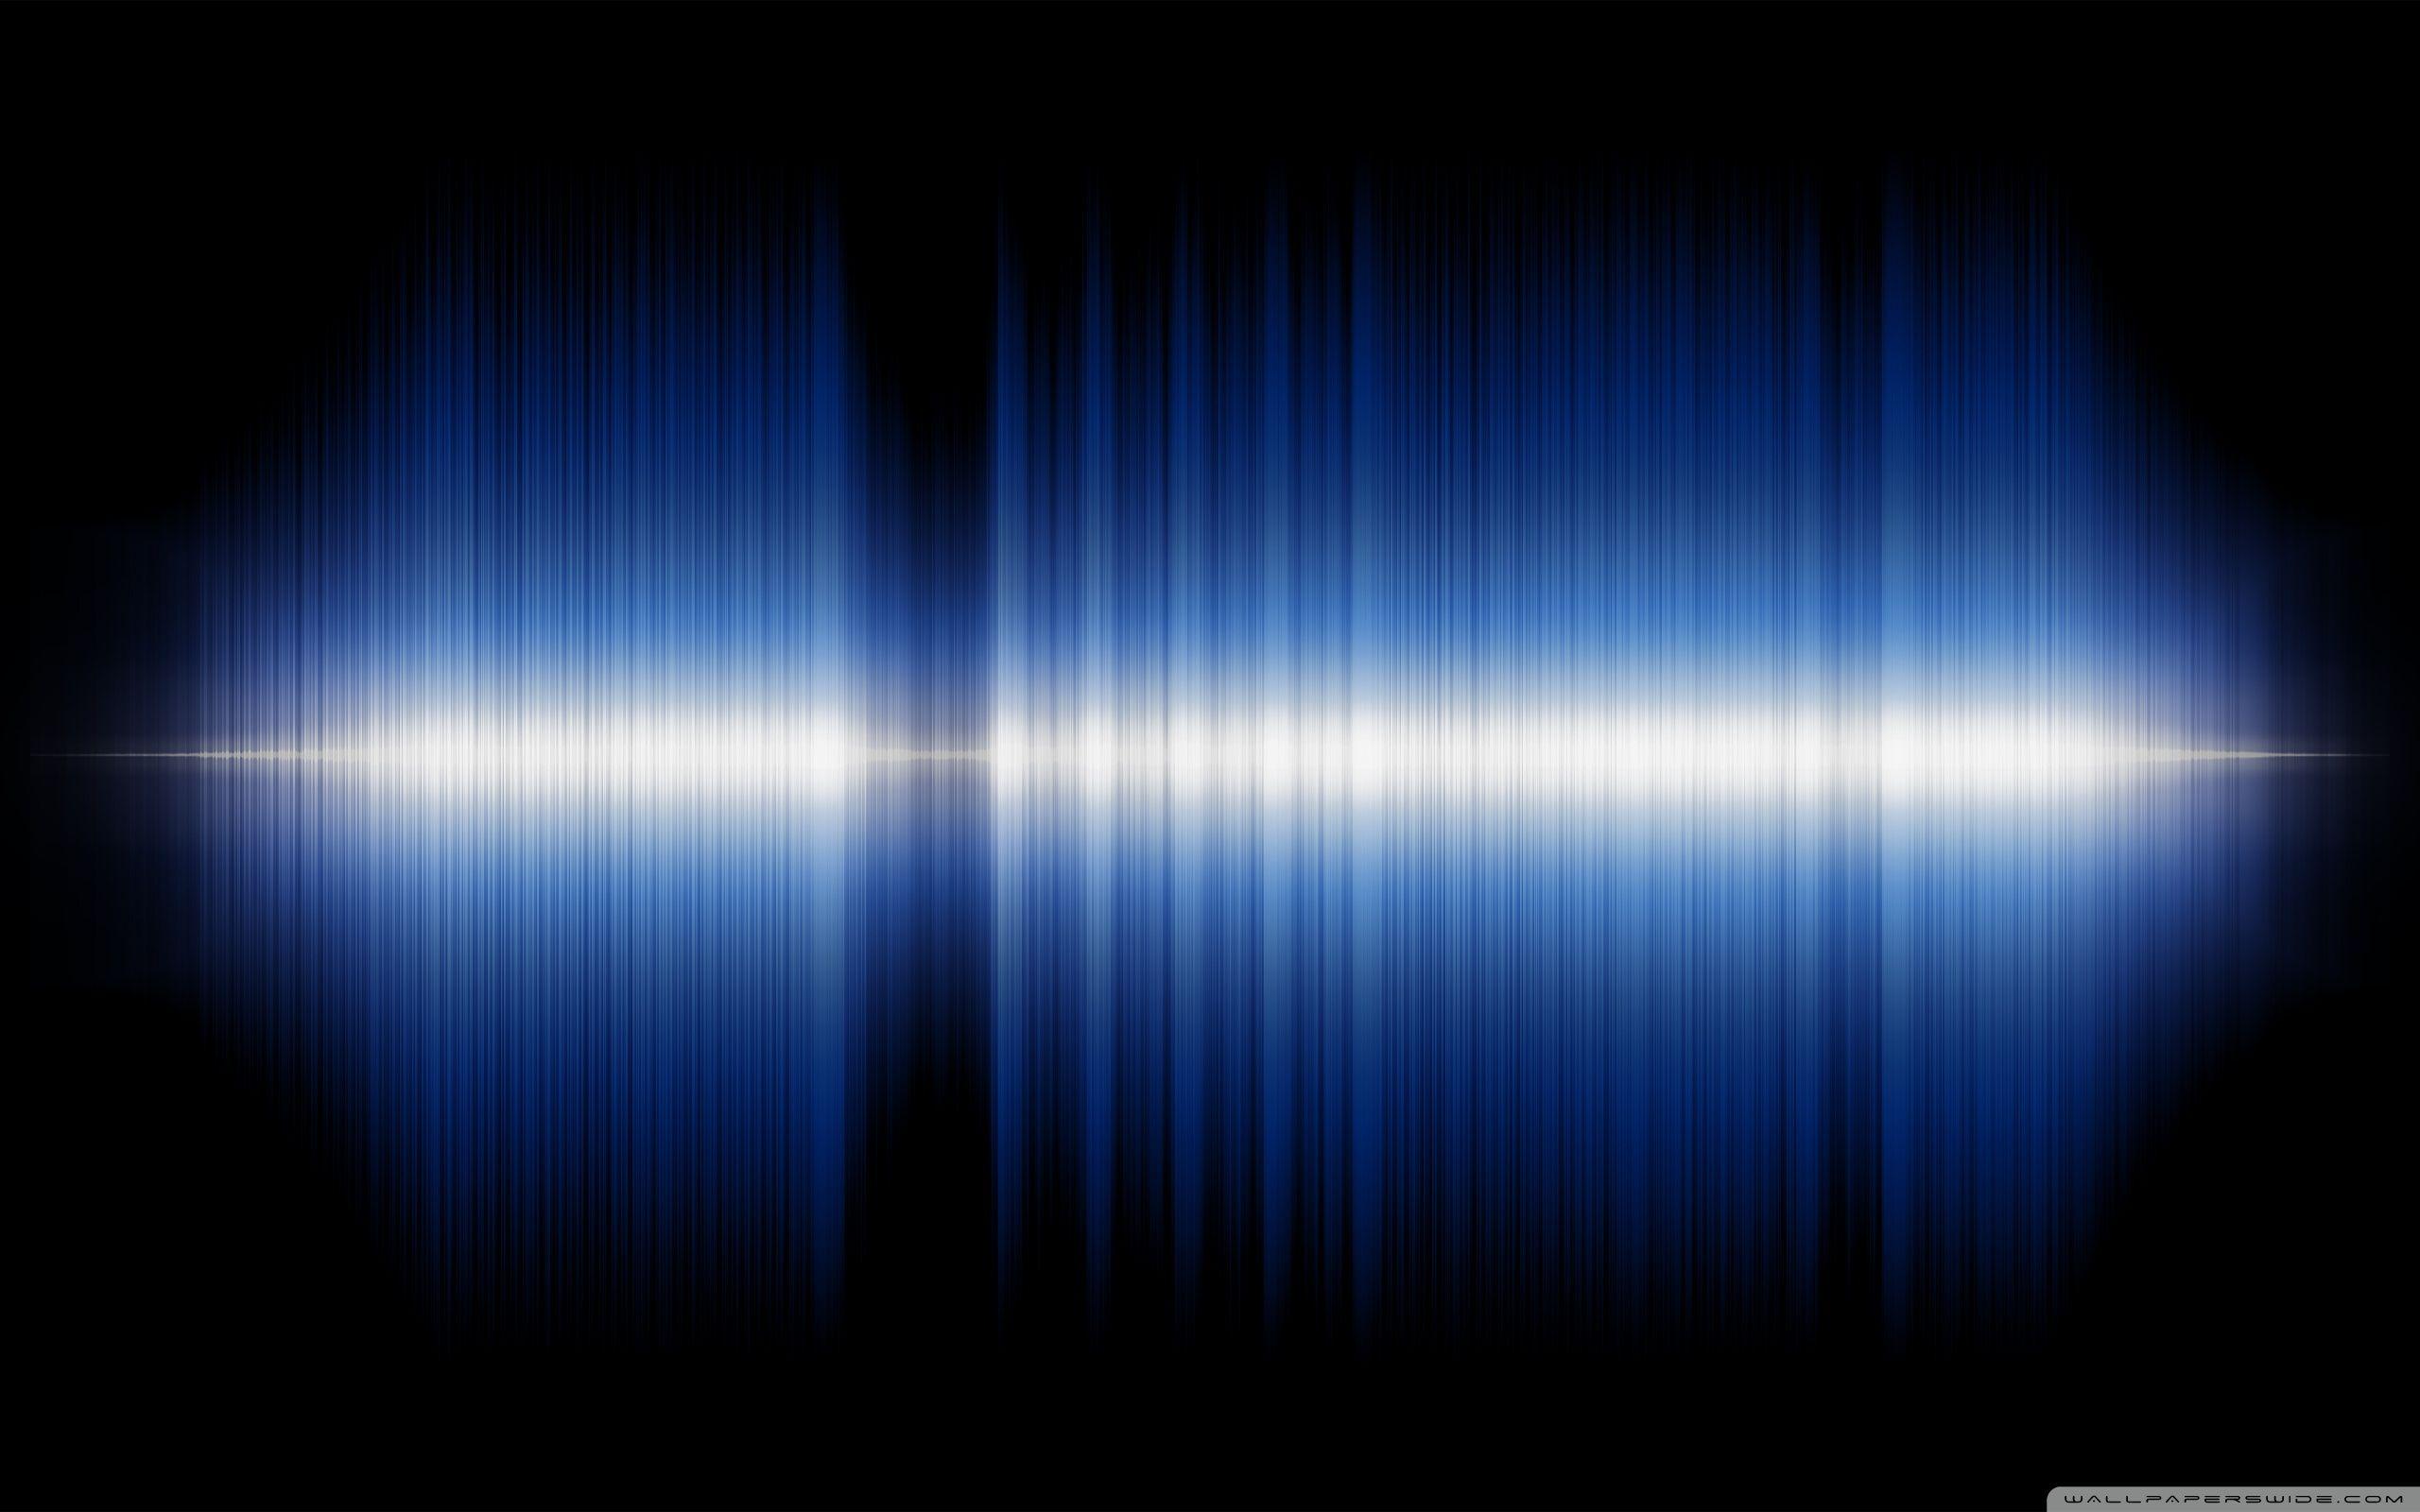 Sound Music Background  Free photo on Pixabay  Pixabay